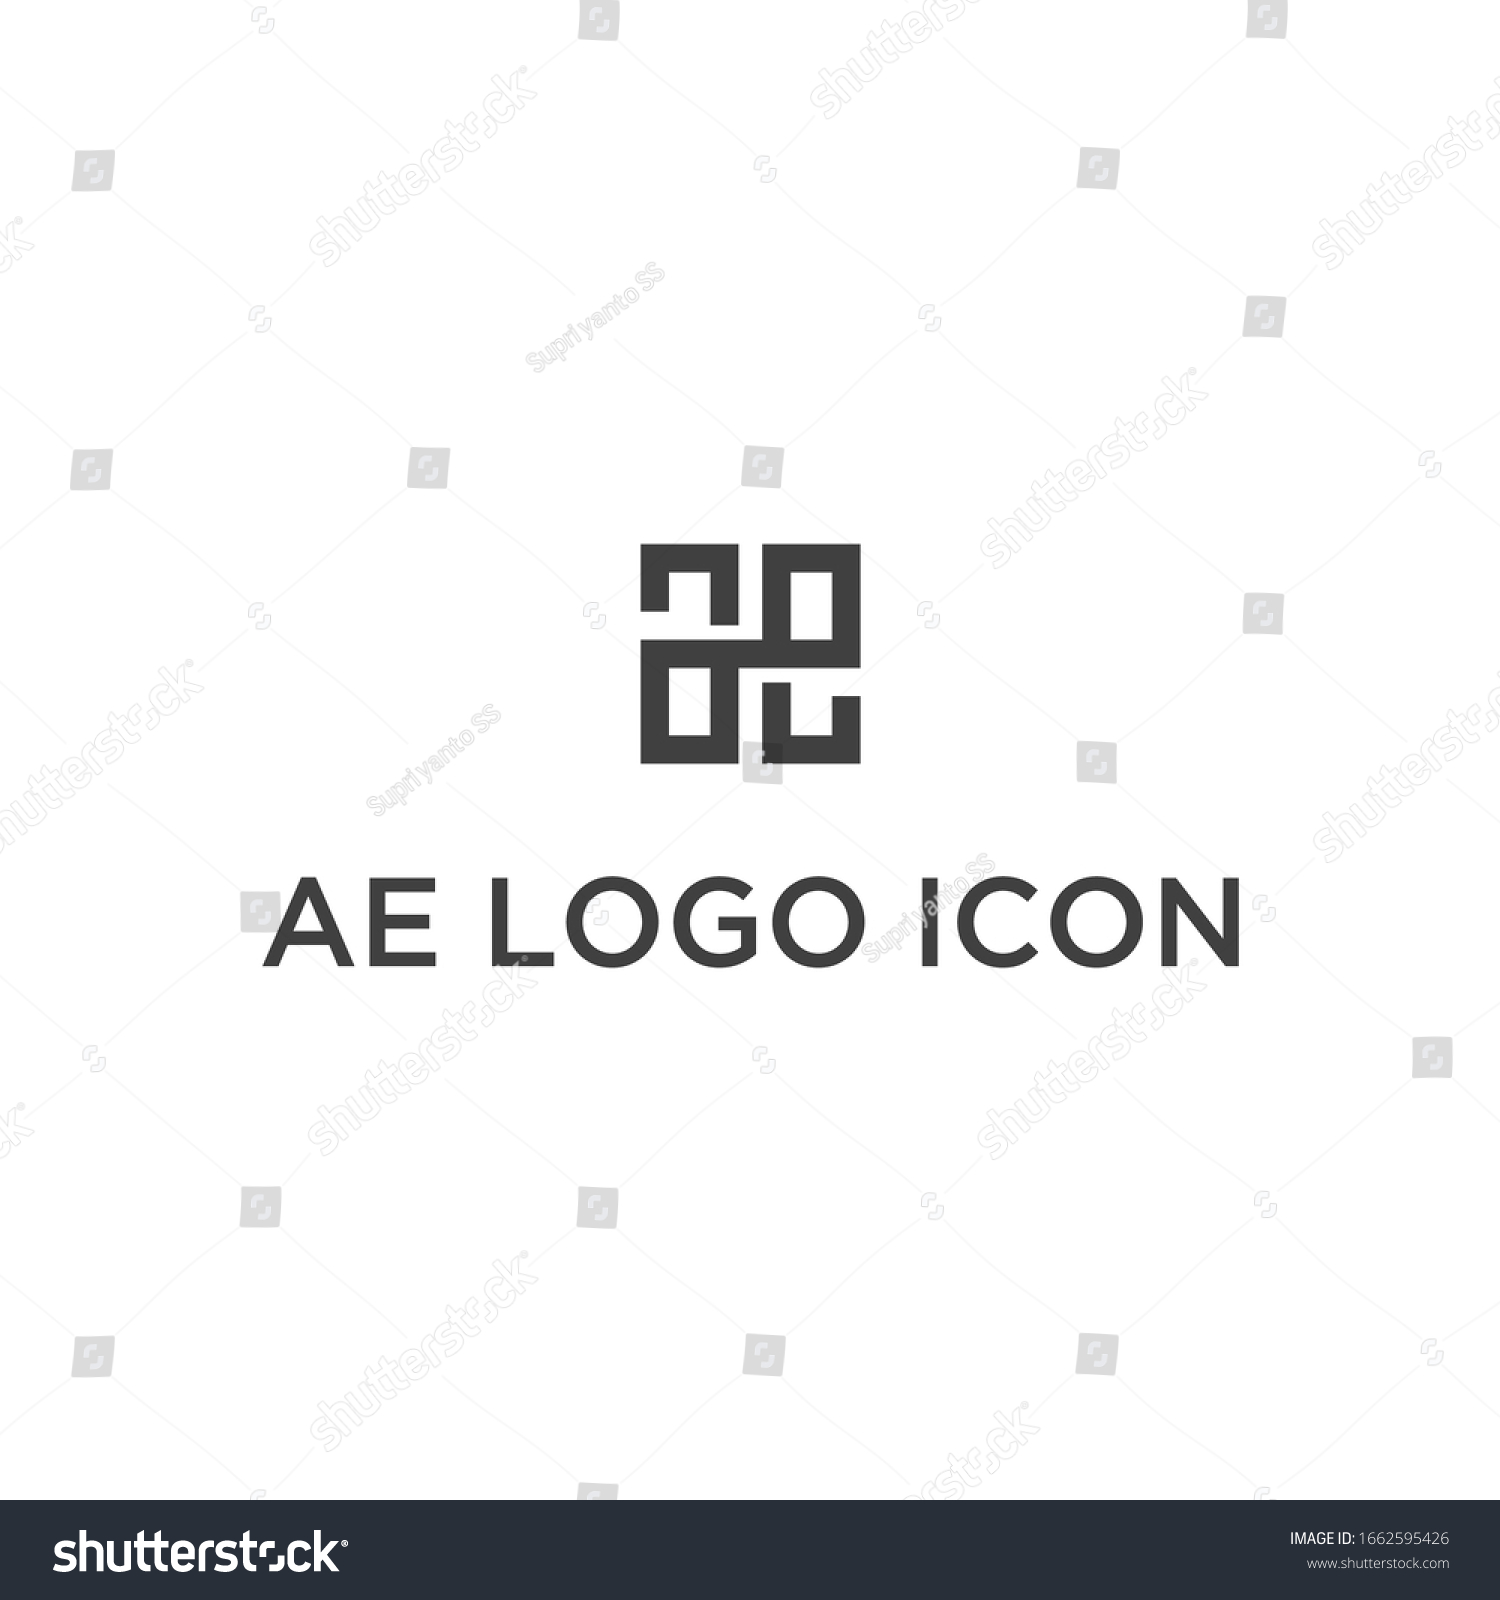 AE logo logo icon vector #1662595426